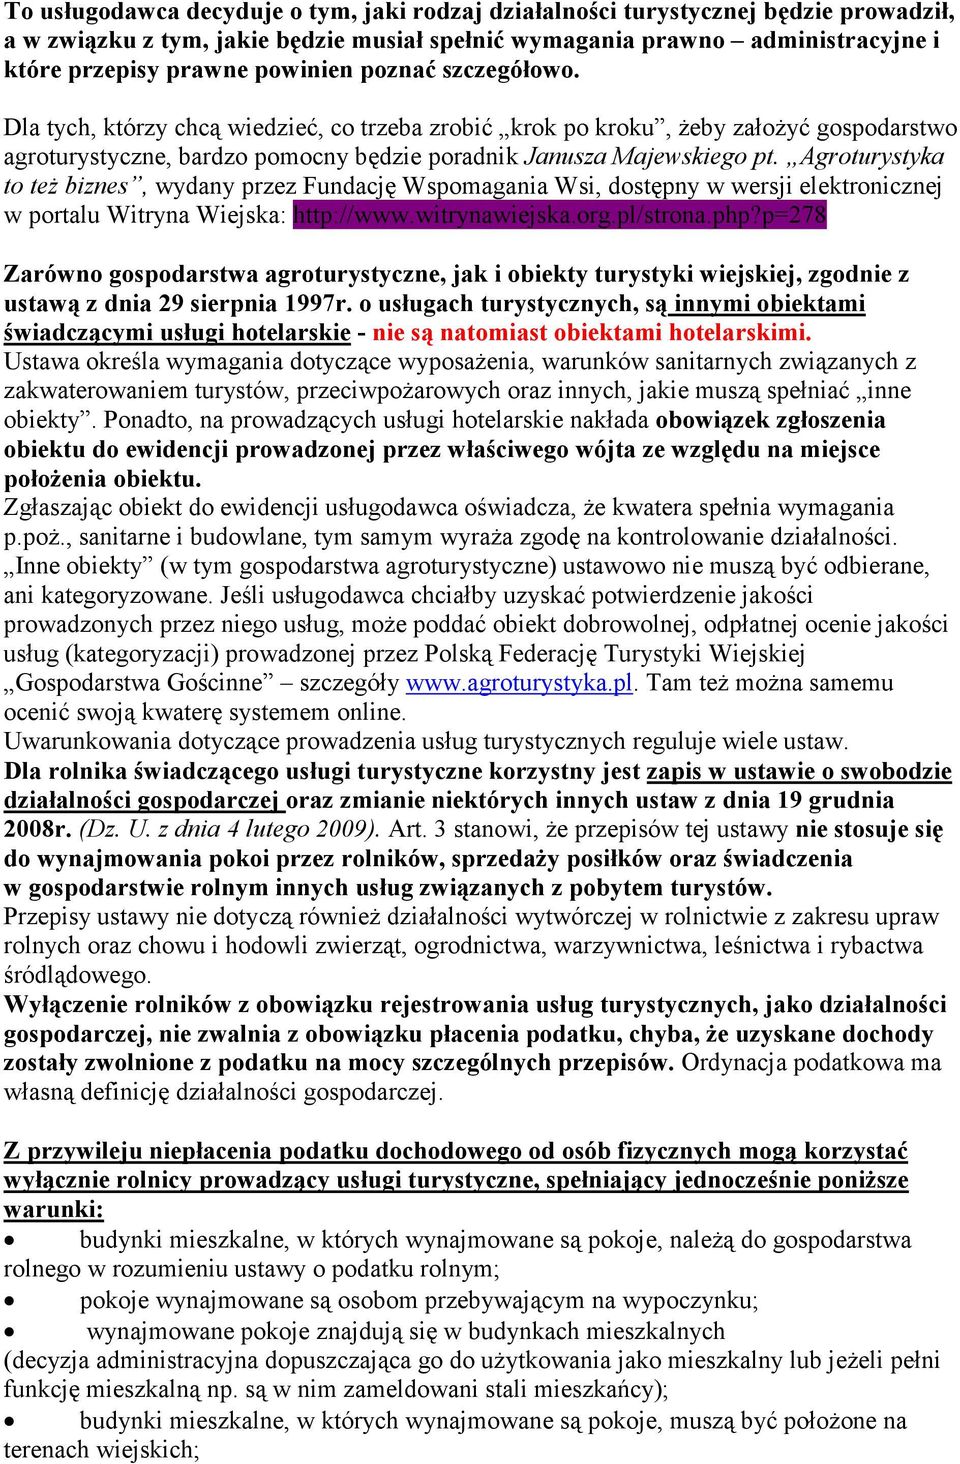 Agroturystyka to też biznes, wydany przez Fundację Wspomagania Wsi, dostępny w wersji elektronicznej w portalu Witryna Wiejska: http://www.witrynawiejska.org.pl/strona.php?